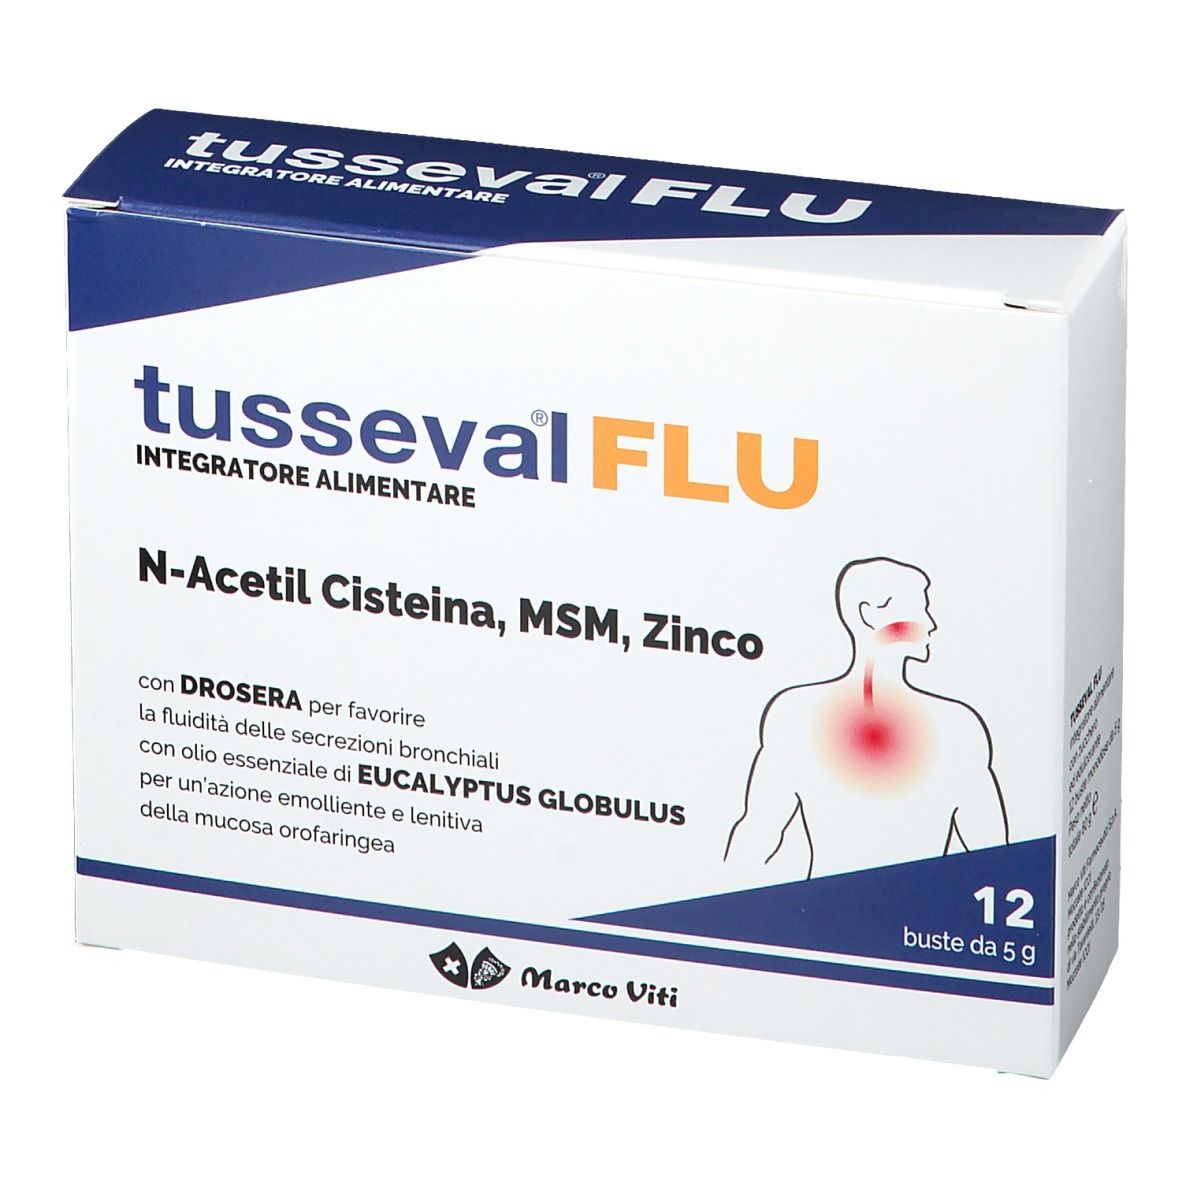 Tusseval® Flu